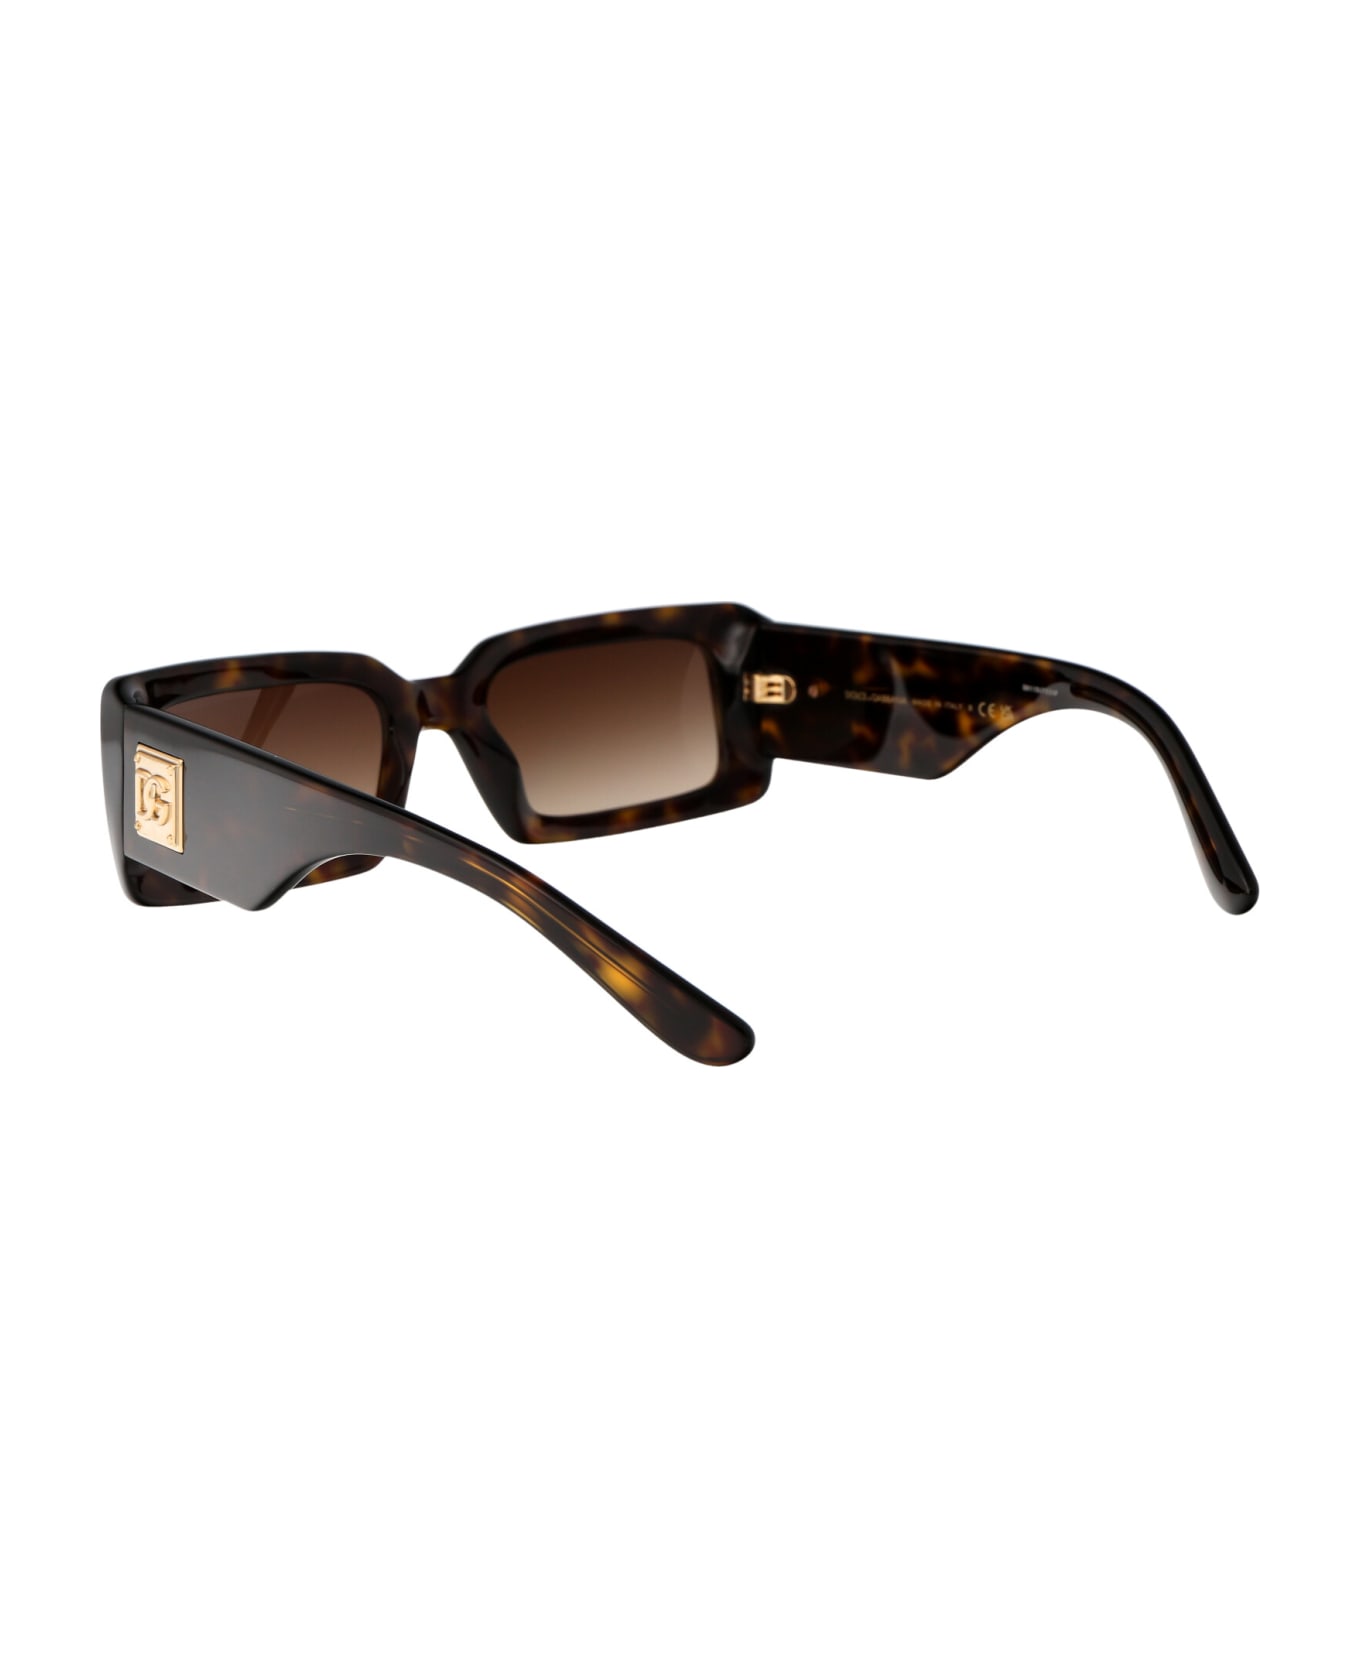 Dolce & Gabbana Eyewear 0dg4416 Sunglasses - 502/13 HAVANA